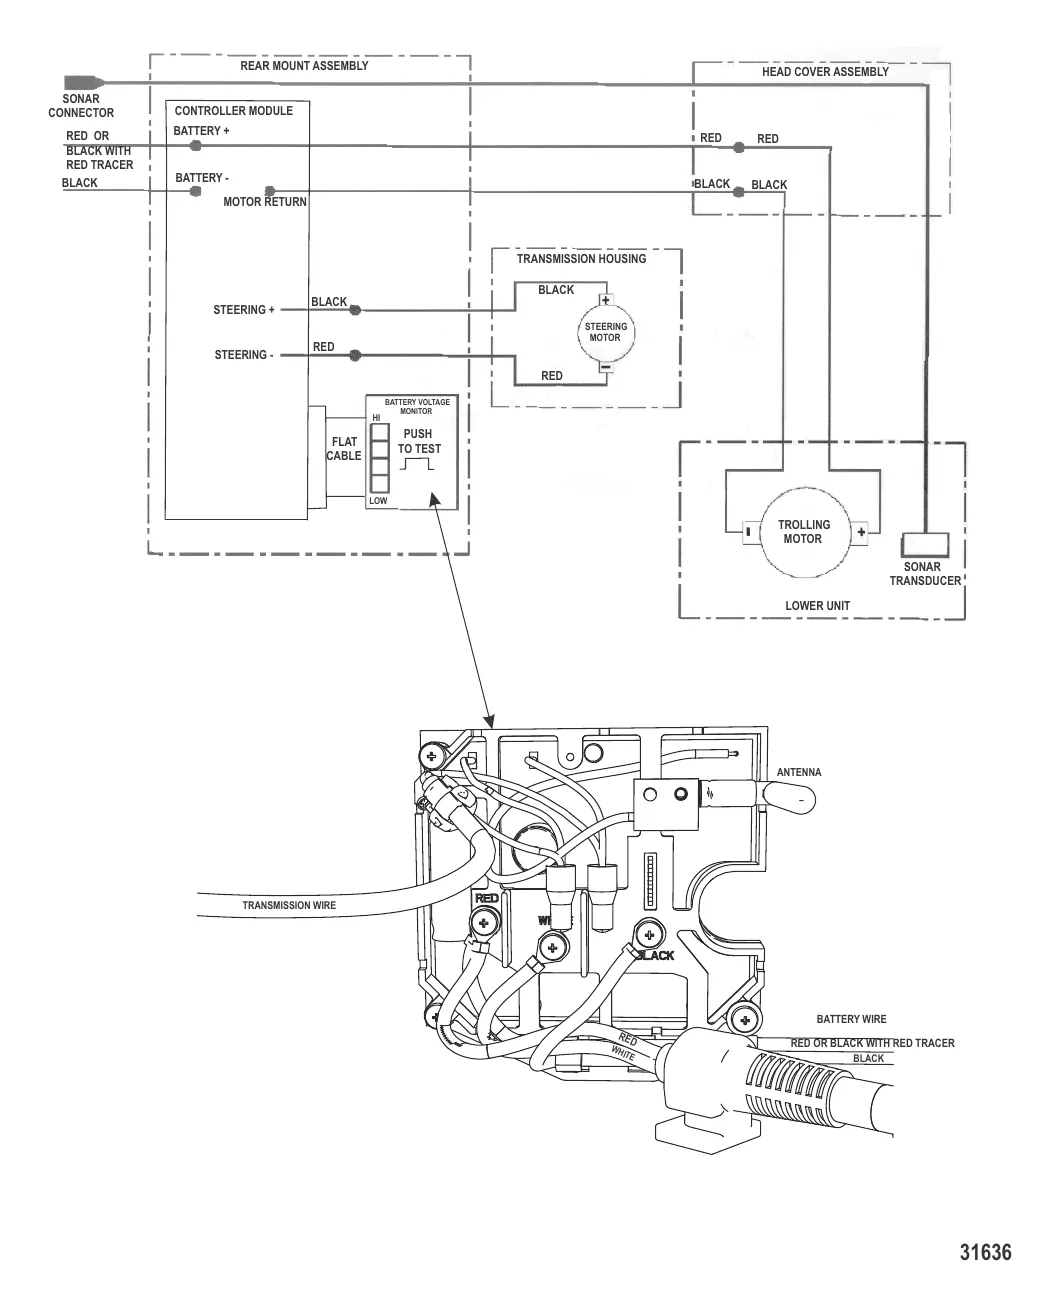 Схема электрических подключений (Беспроводные модели) (12/24 В)